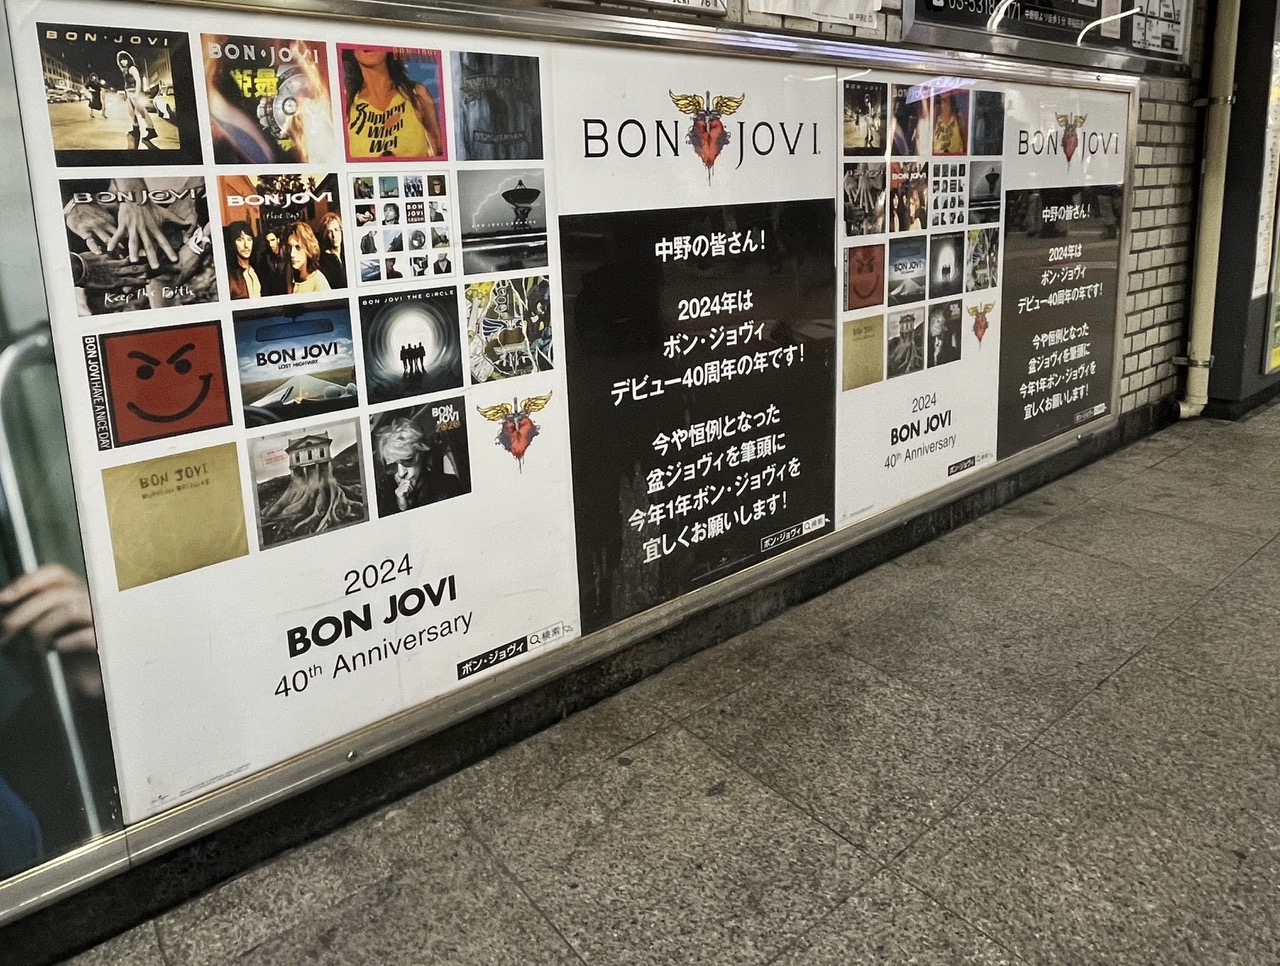 ボン・ジョヴィ、40周年を記念したポスターがJR中野駅に掲出 | Daily News | Billboard JAPAN